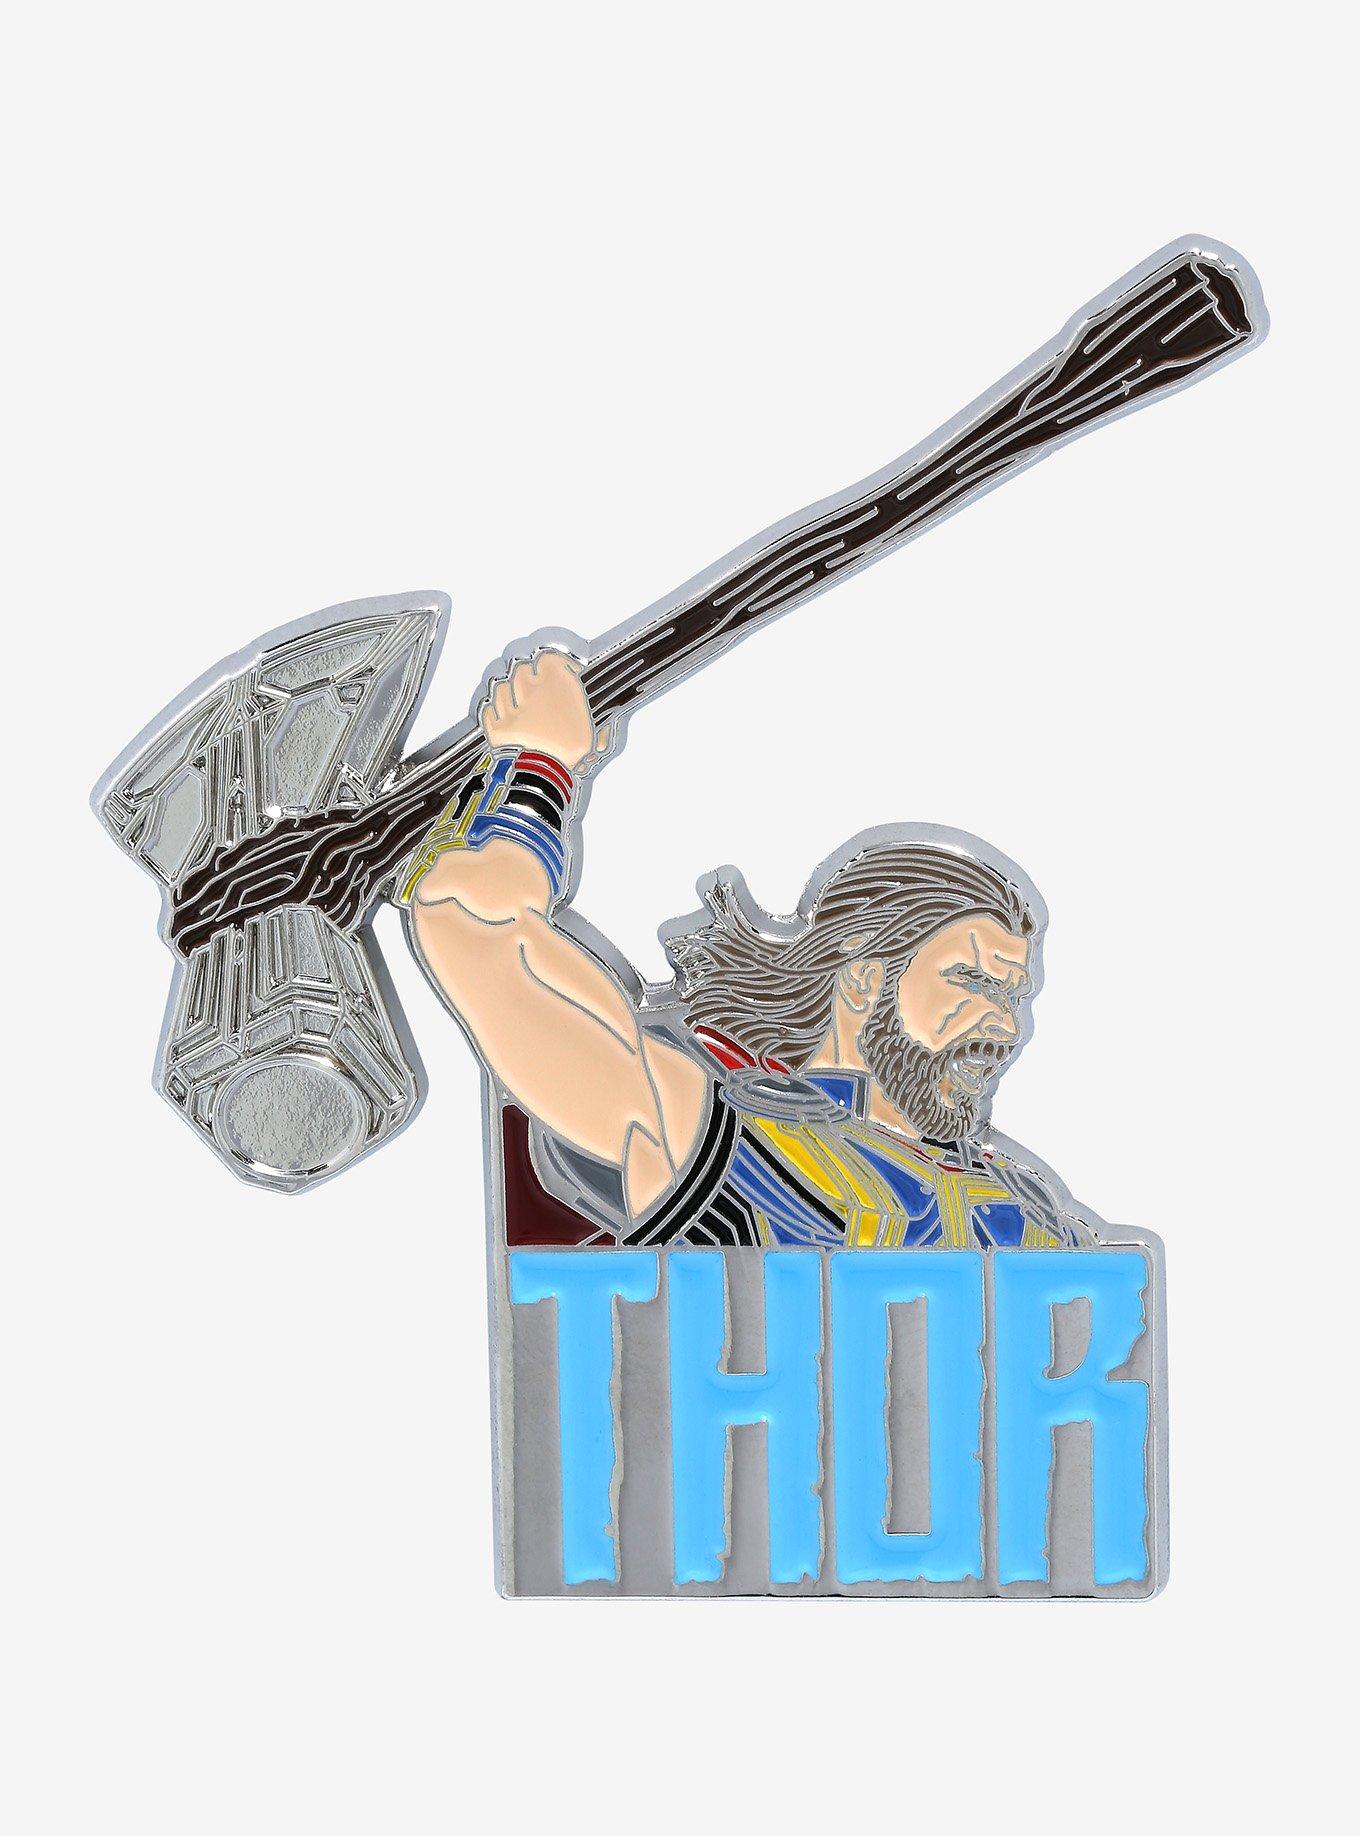 Pin on Thor